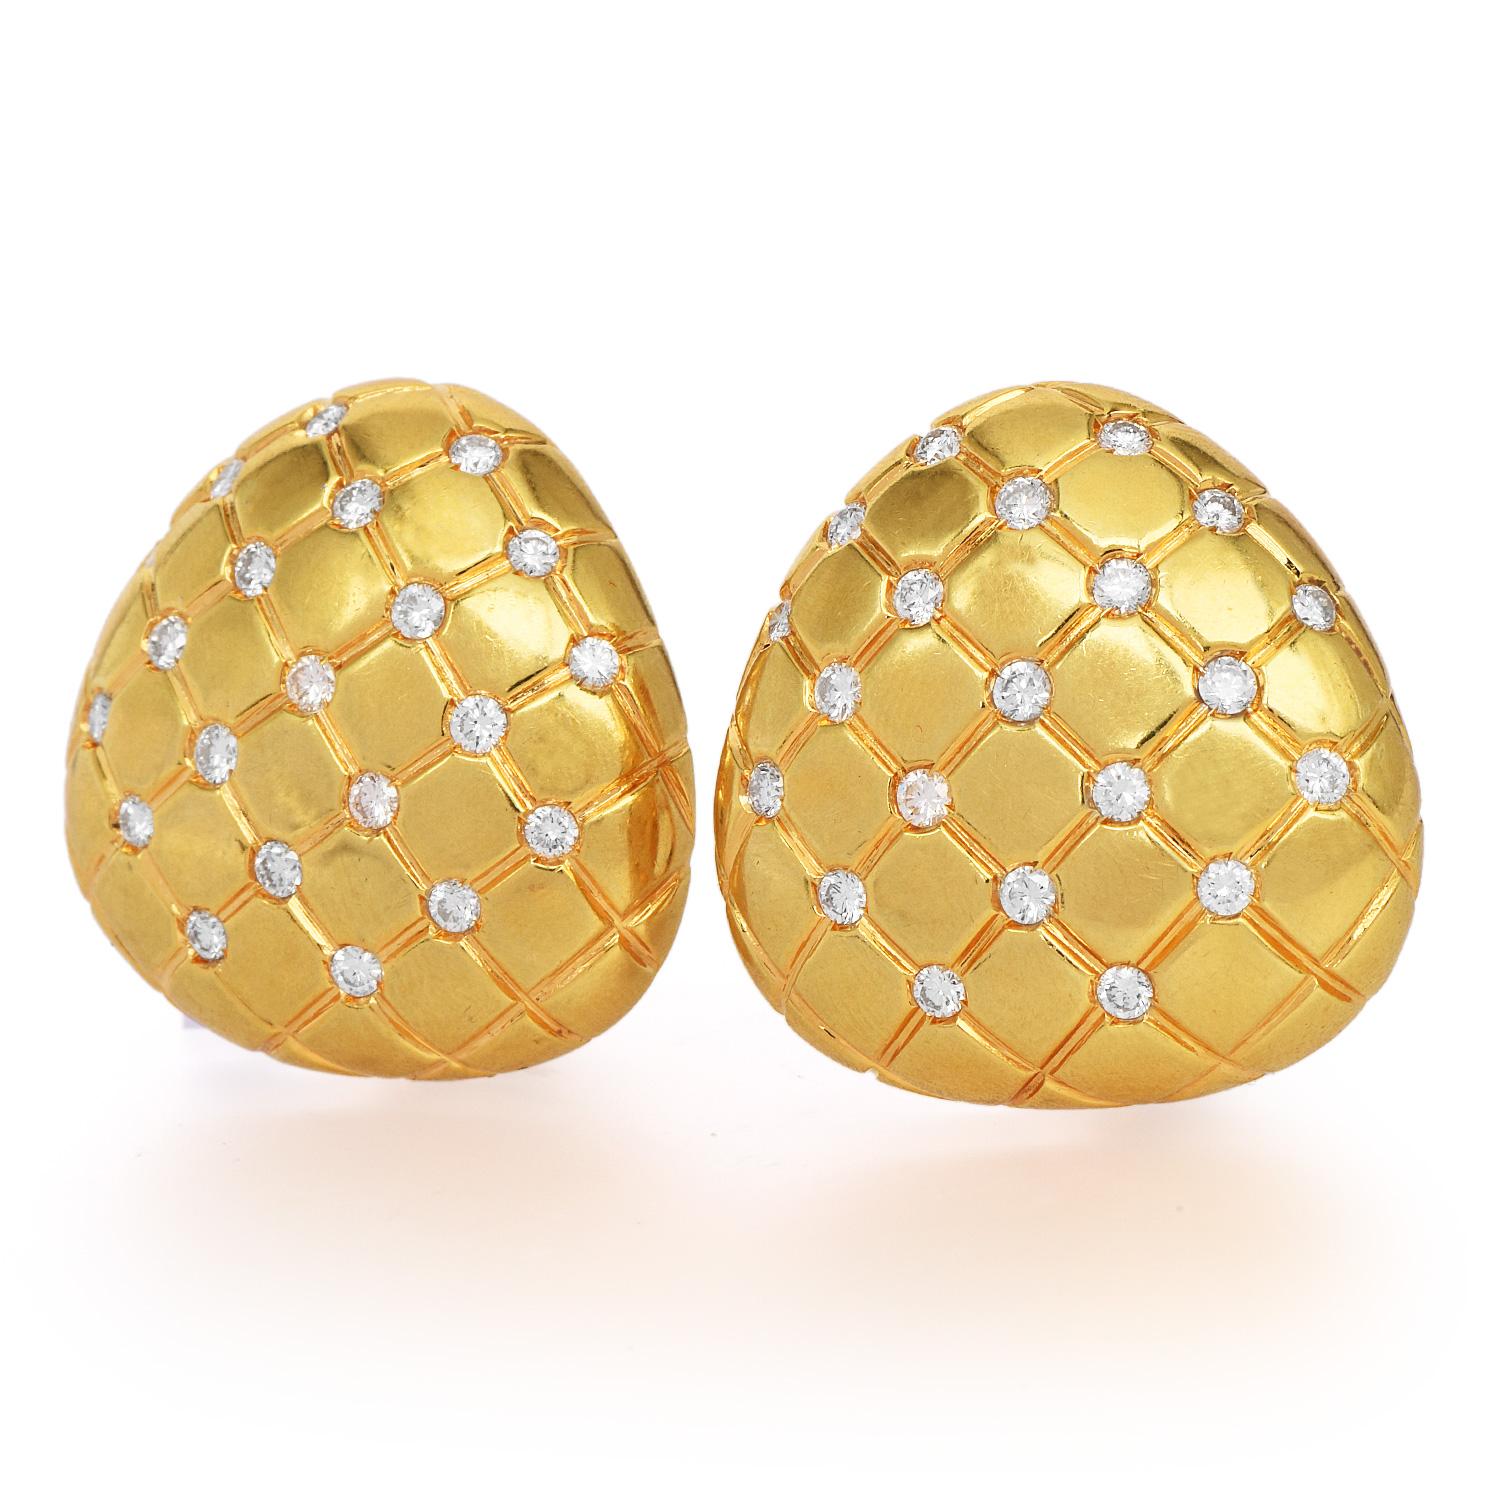  Chic 1990er Chic gesteppte Kissen Trillion Design Clip-on Ohrringe, mit einer luxuriösen hochglanzpolierten Oberfläche.
Aus massivem 18-karätigem Gelbgold gefertigt, ergänzt durch (42) echte Diamanten im Rundschliff mit einem Gewicht von ca. 1,25